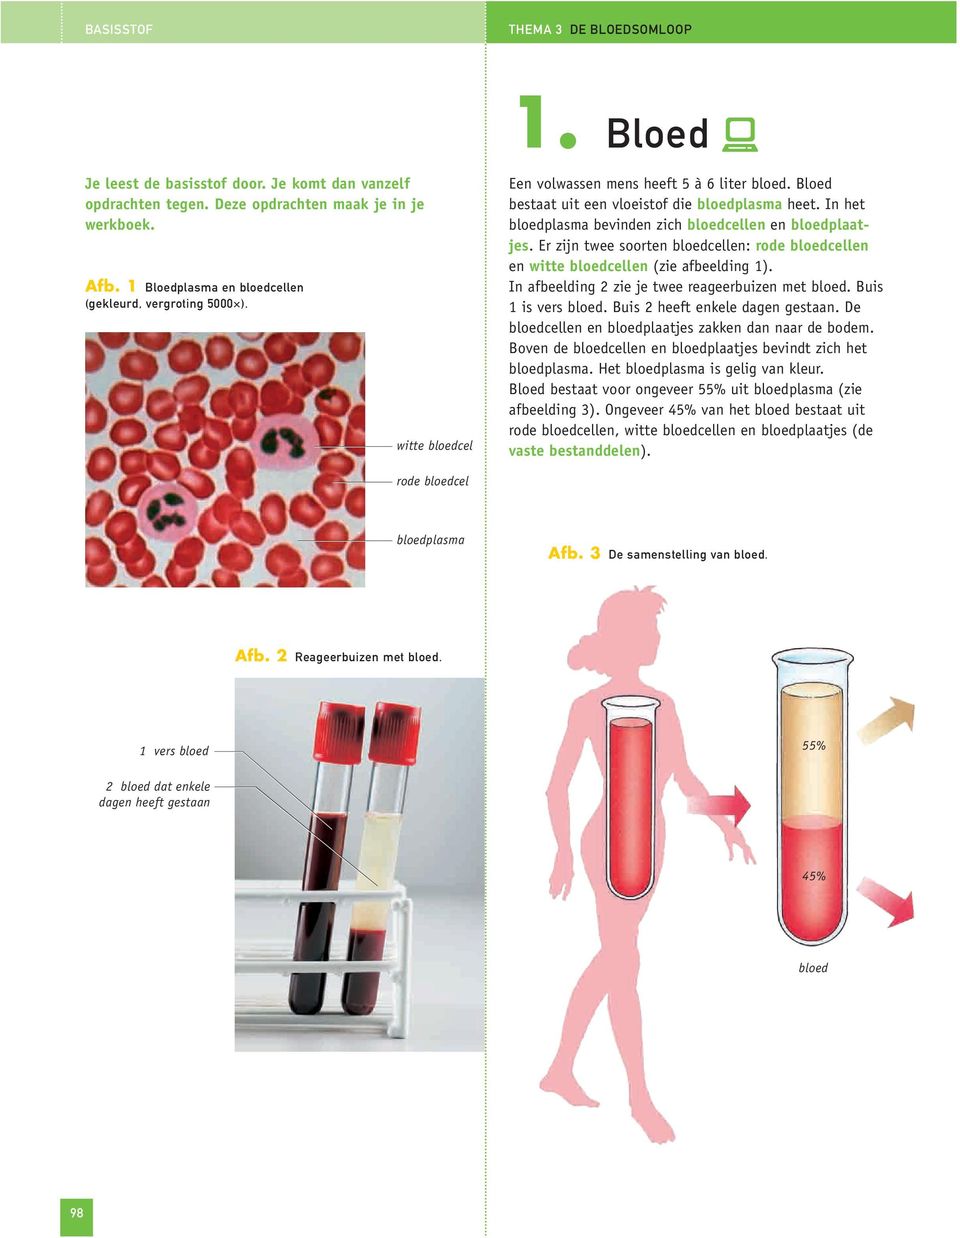 In het bloedplasma bevinden zich bloedcellen en bloedplaatjes. Er zijn twee soorten bloedcellen: rode bloedcellen en witte bloedcellen (zie afbeelding 1).